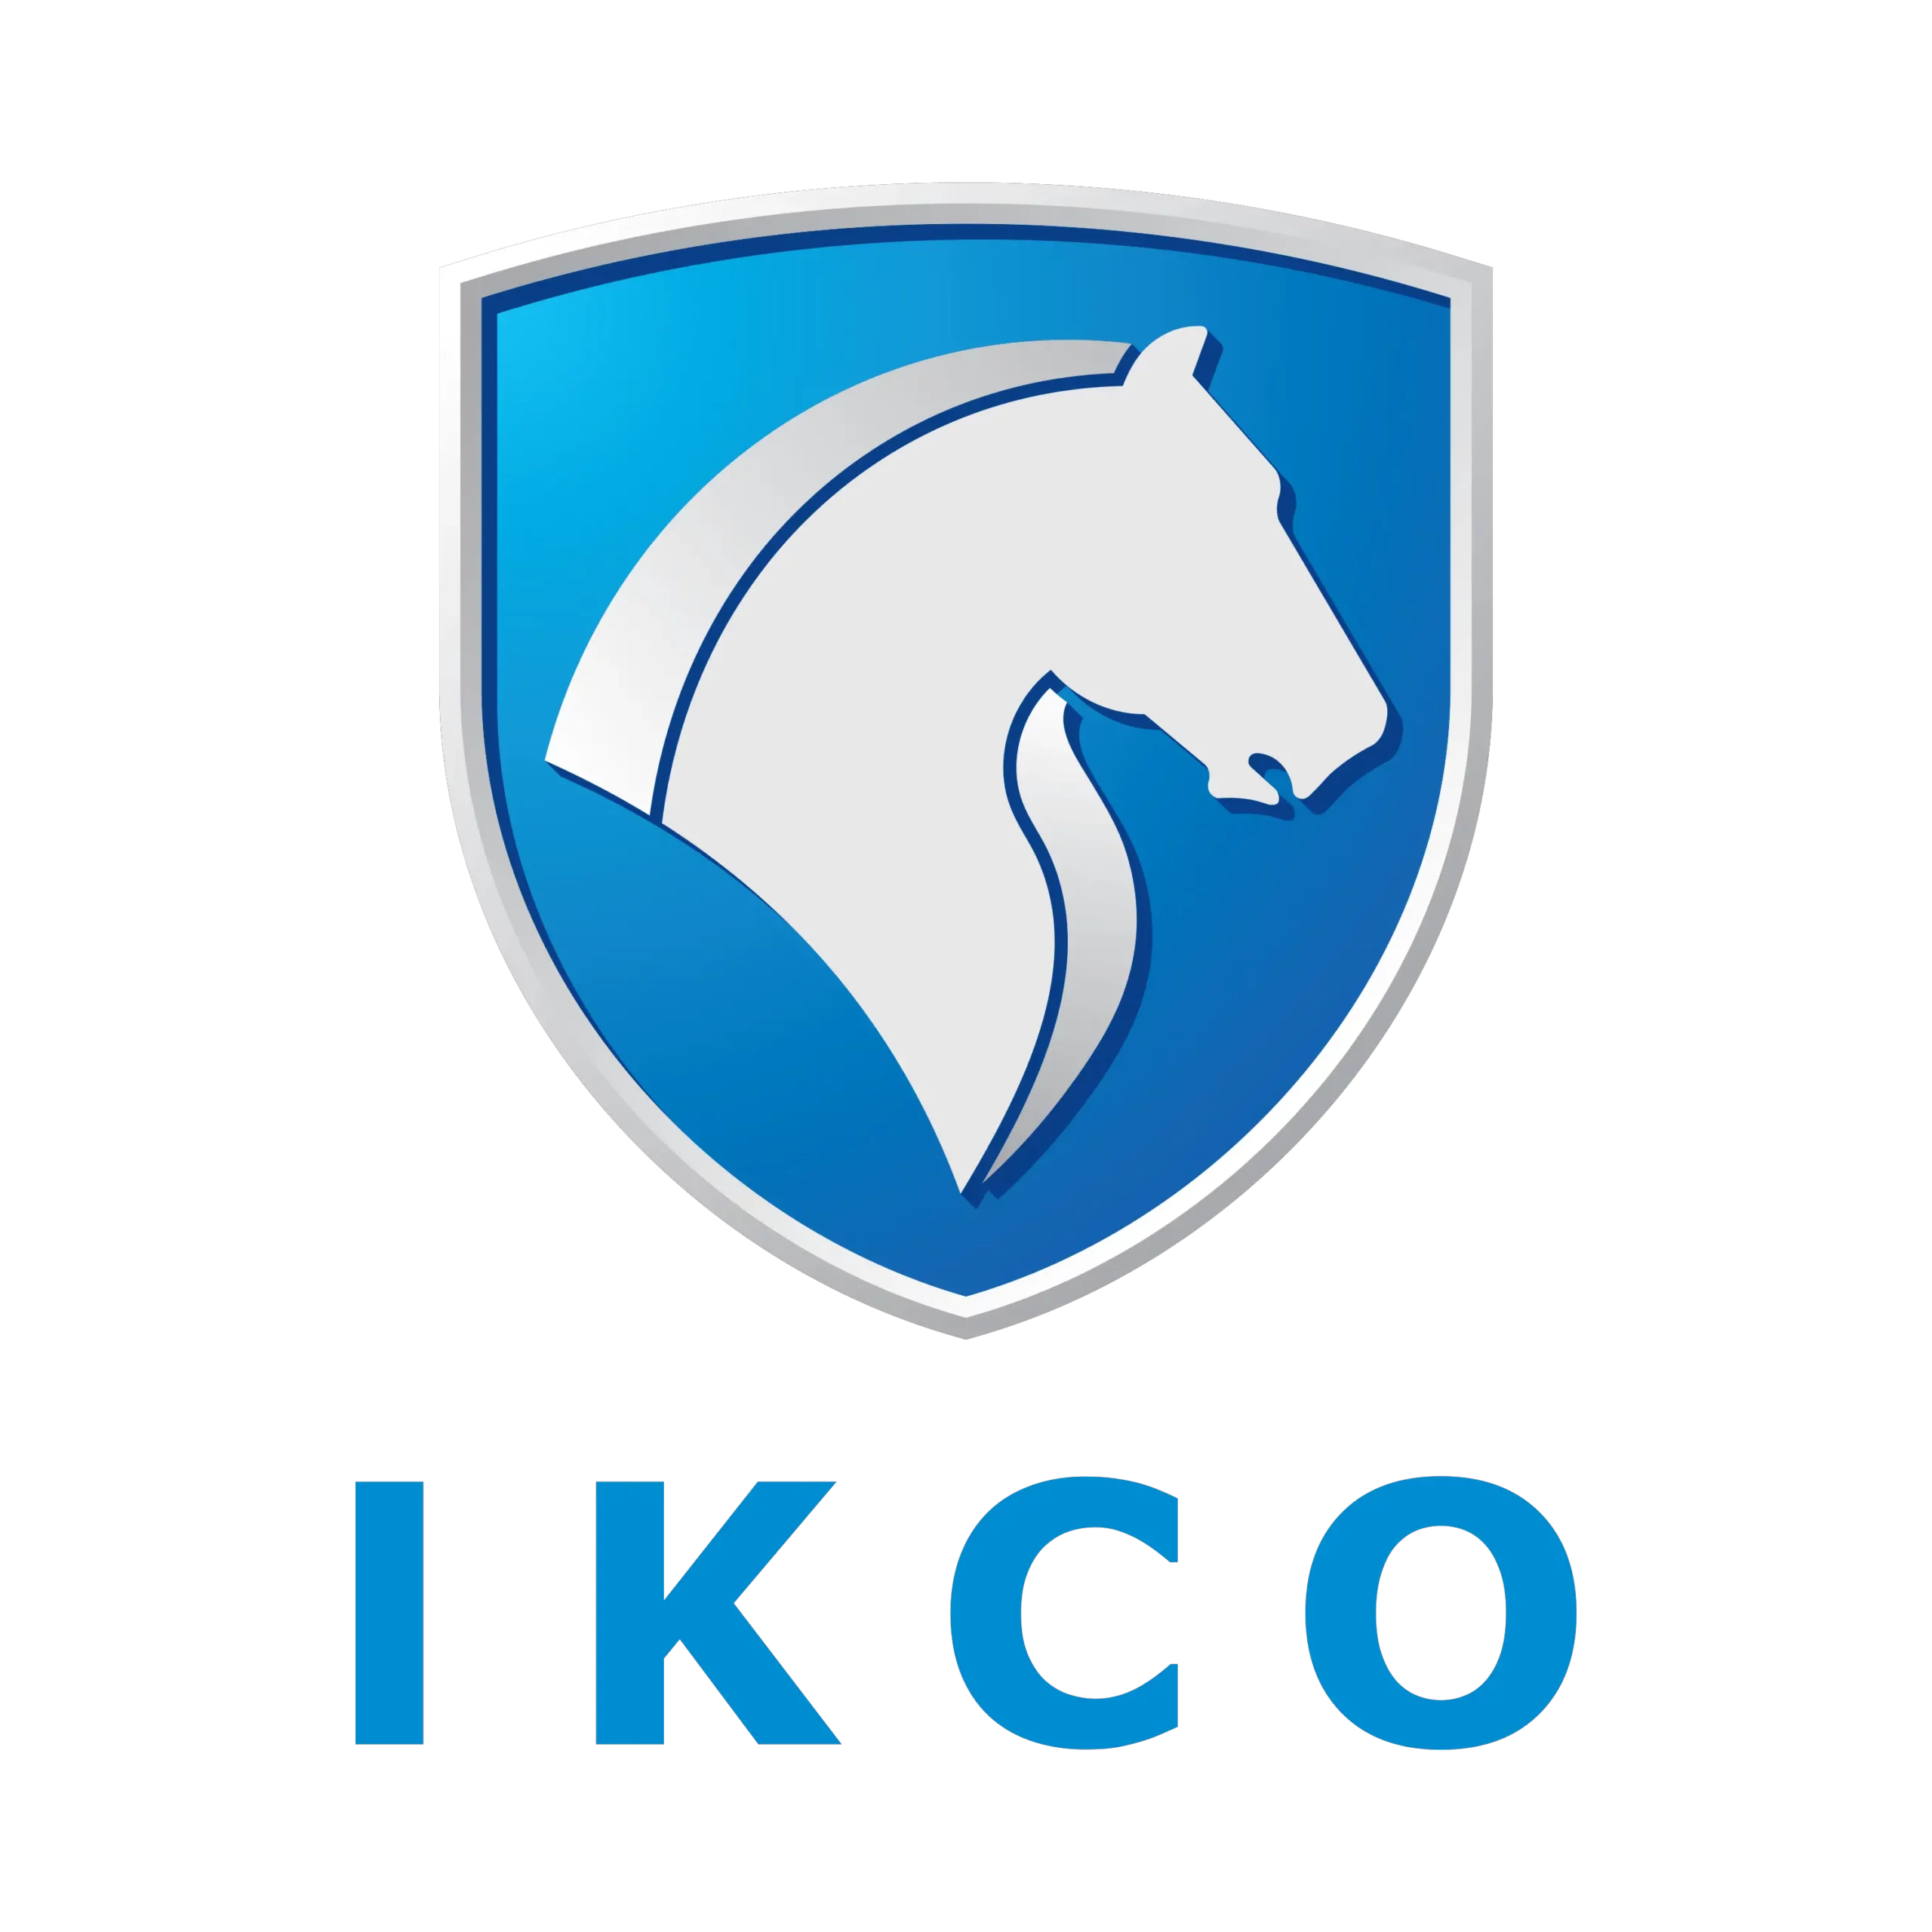 Iran-Khodro-logo-3000x3000